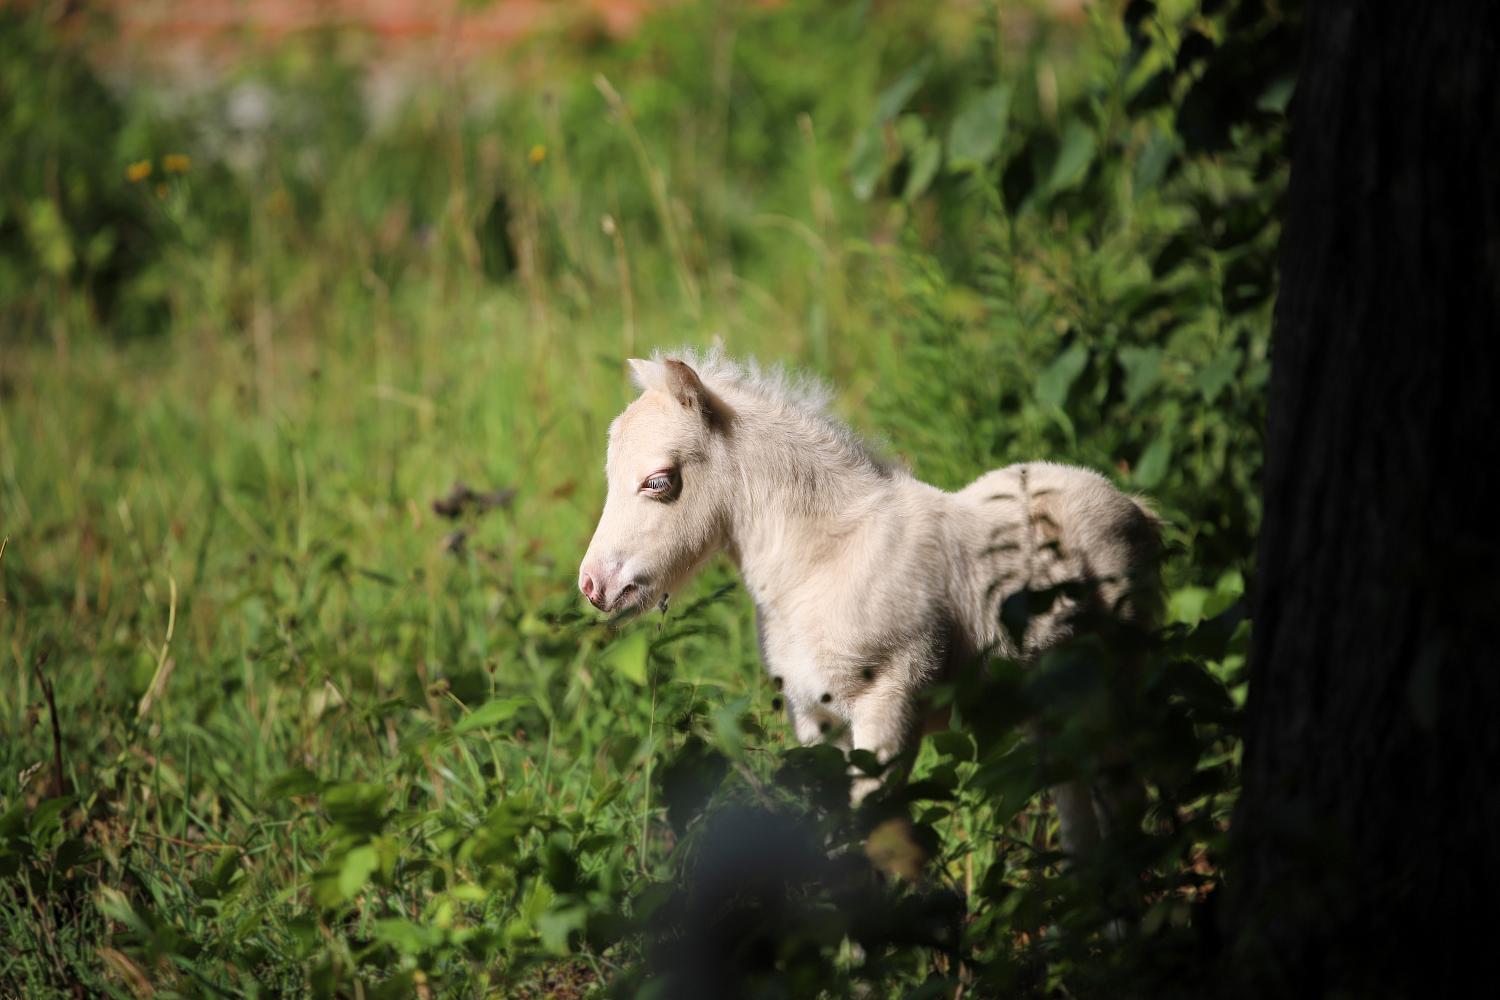 Жеребец, Миниатюрный шетлендский пони, изабелловый (CREMELLO), Milk Shake Pegasus